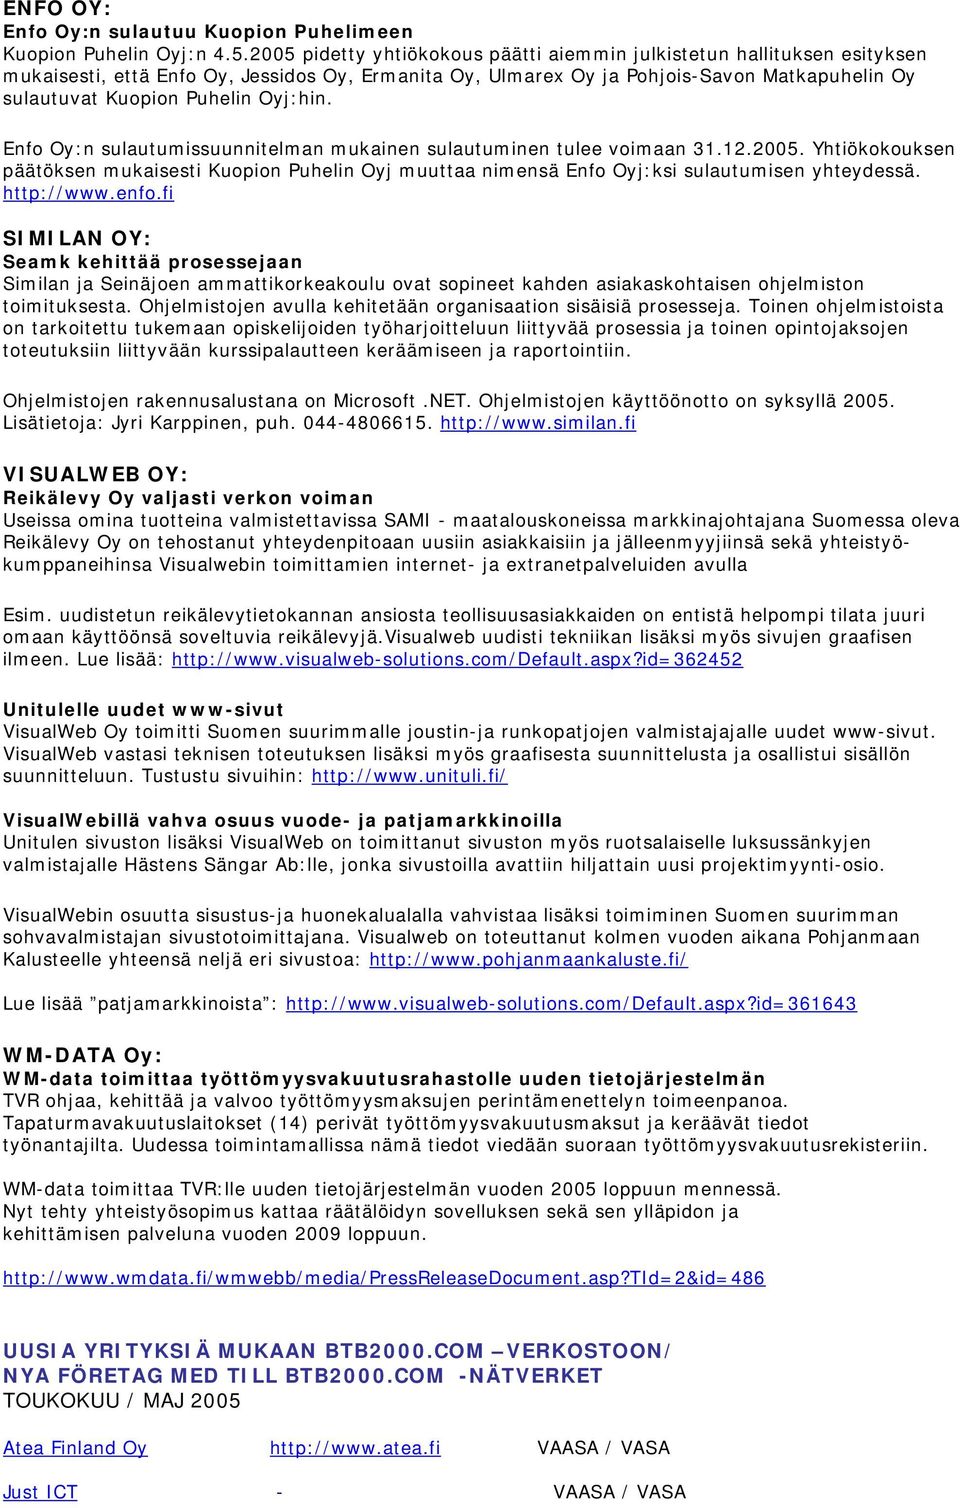 Oyj:hin. Enfo Oy:n sulautumissuunnitelman mukainen sulautuminen tulee voimaan 31.12.2005. Yhtiökokouksen päätöksen mukaisesti Kuopion Puhelin Oyj muuttaa nimensä Enfo Oyj:ksi sulautumisen yhteydessä.